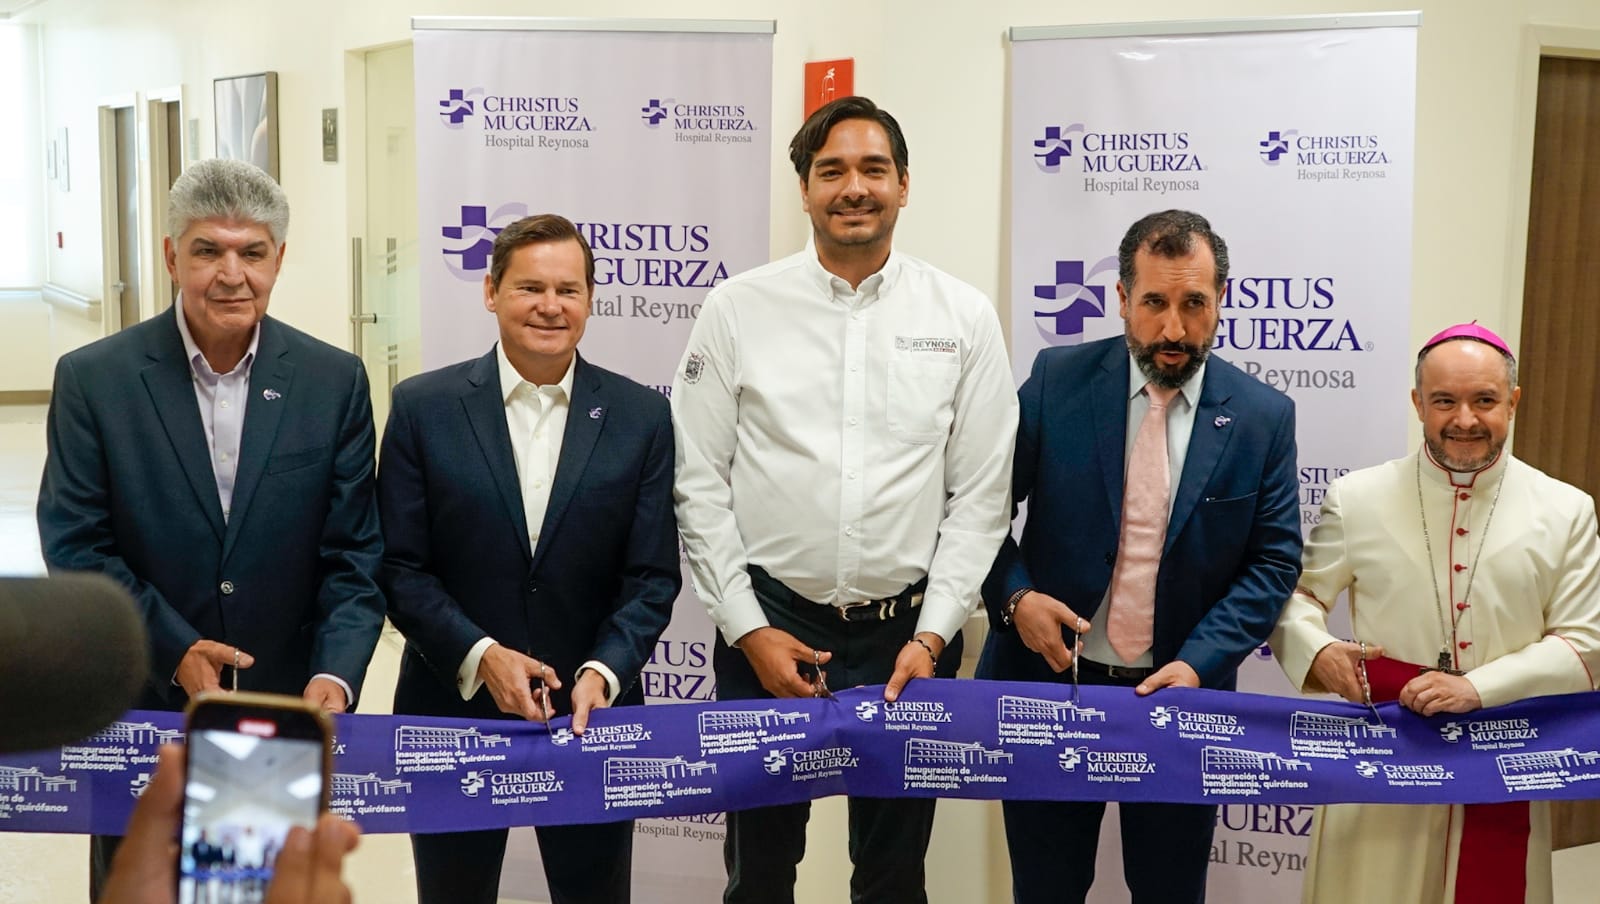 Inauguración de nuevas áreas médicas en CHRISTUS MUGUERZA Hospital Reynosa